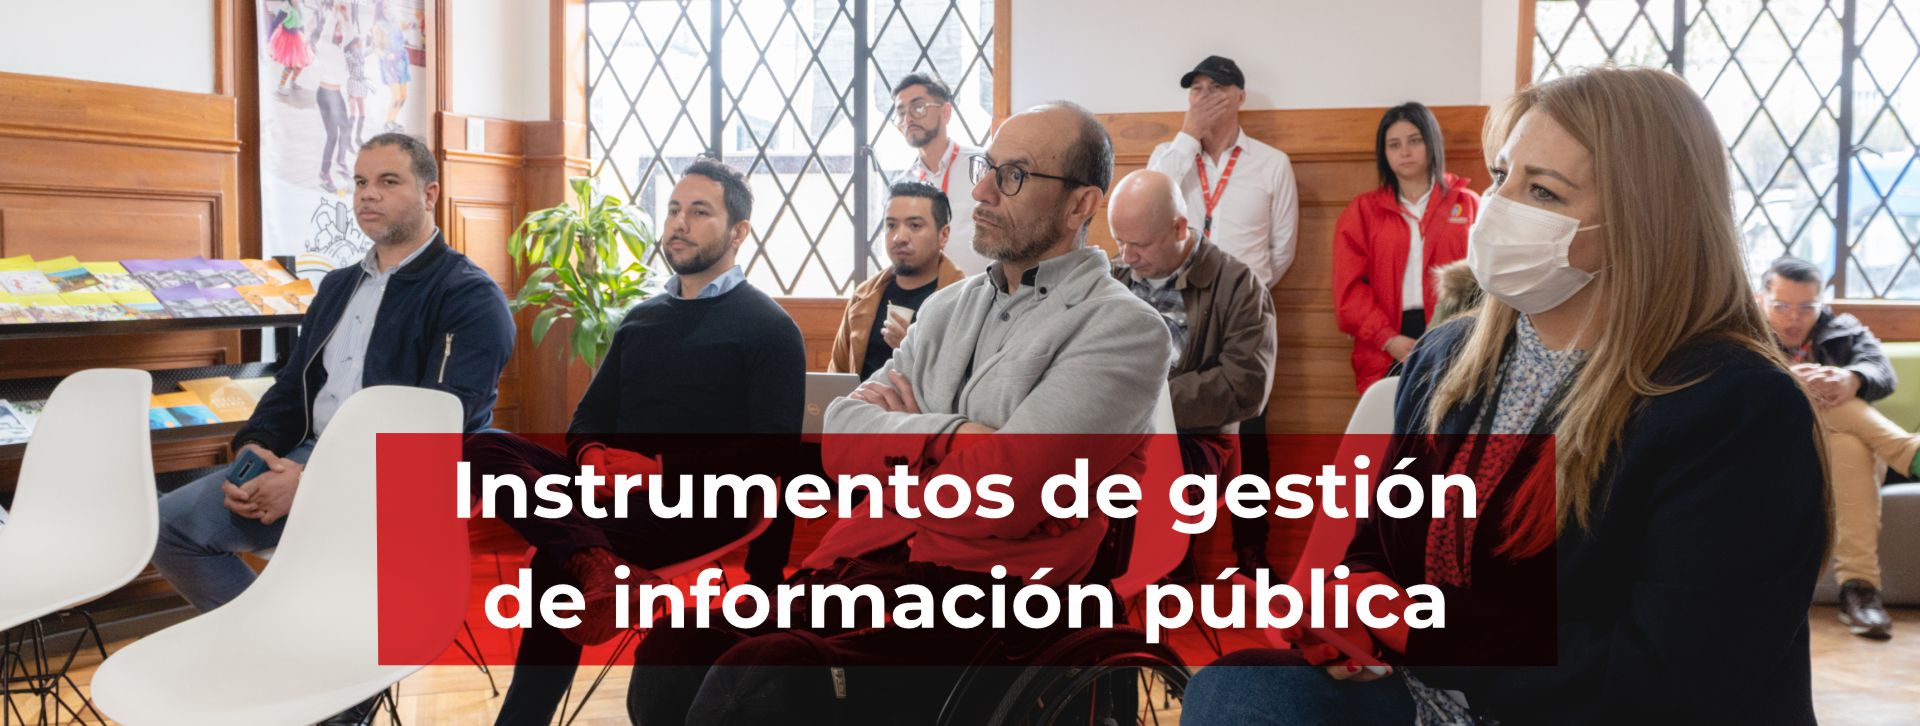 Banner Instrumentos de gestión de información pública